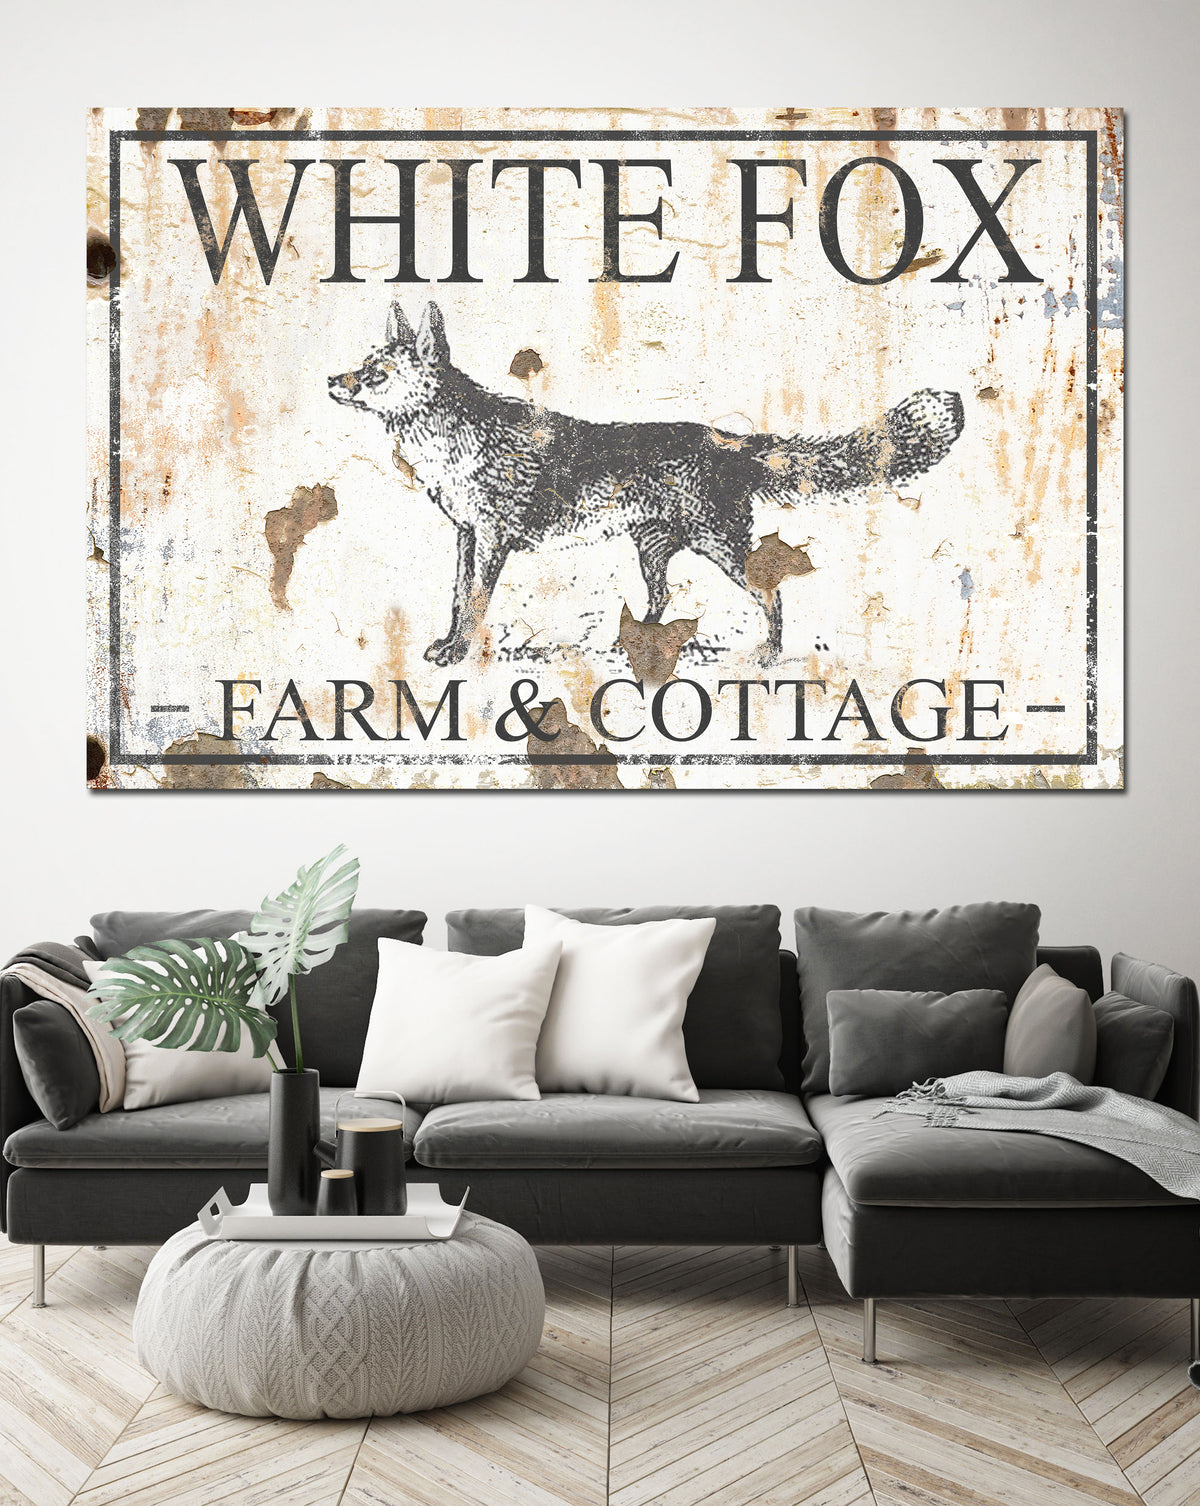 White Fox Farm & Cottage Farmhouse Decor - Canvas Print Wall Art